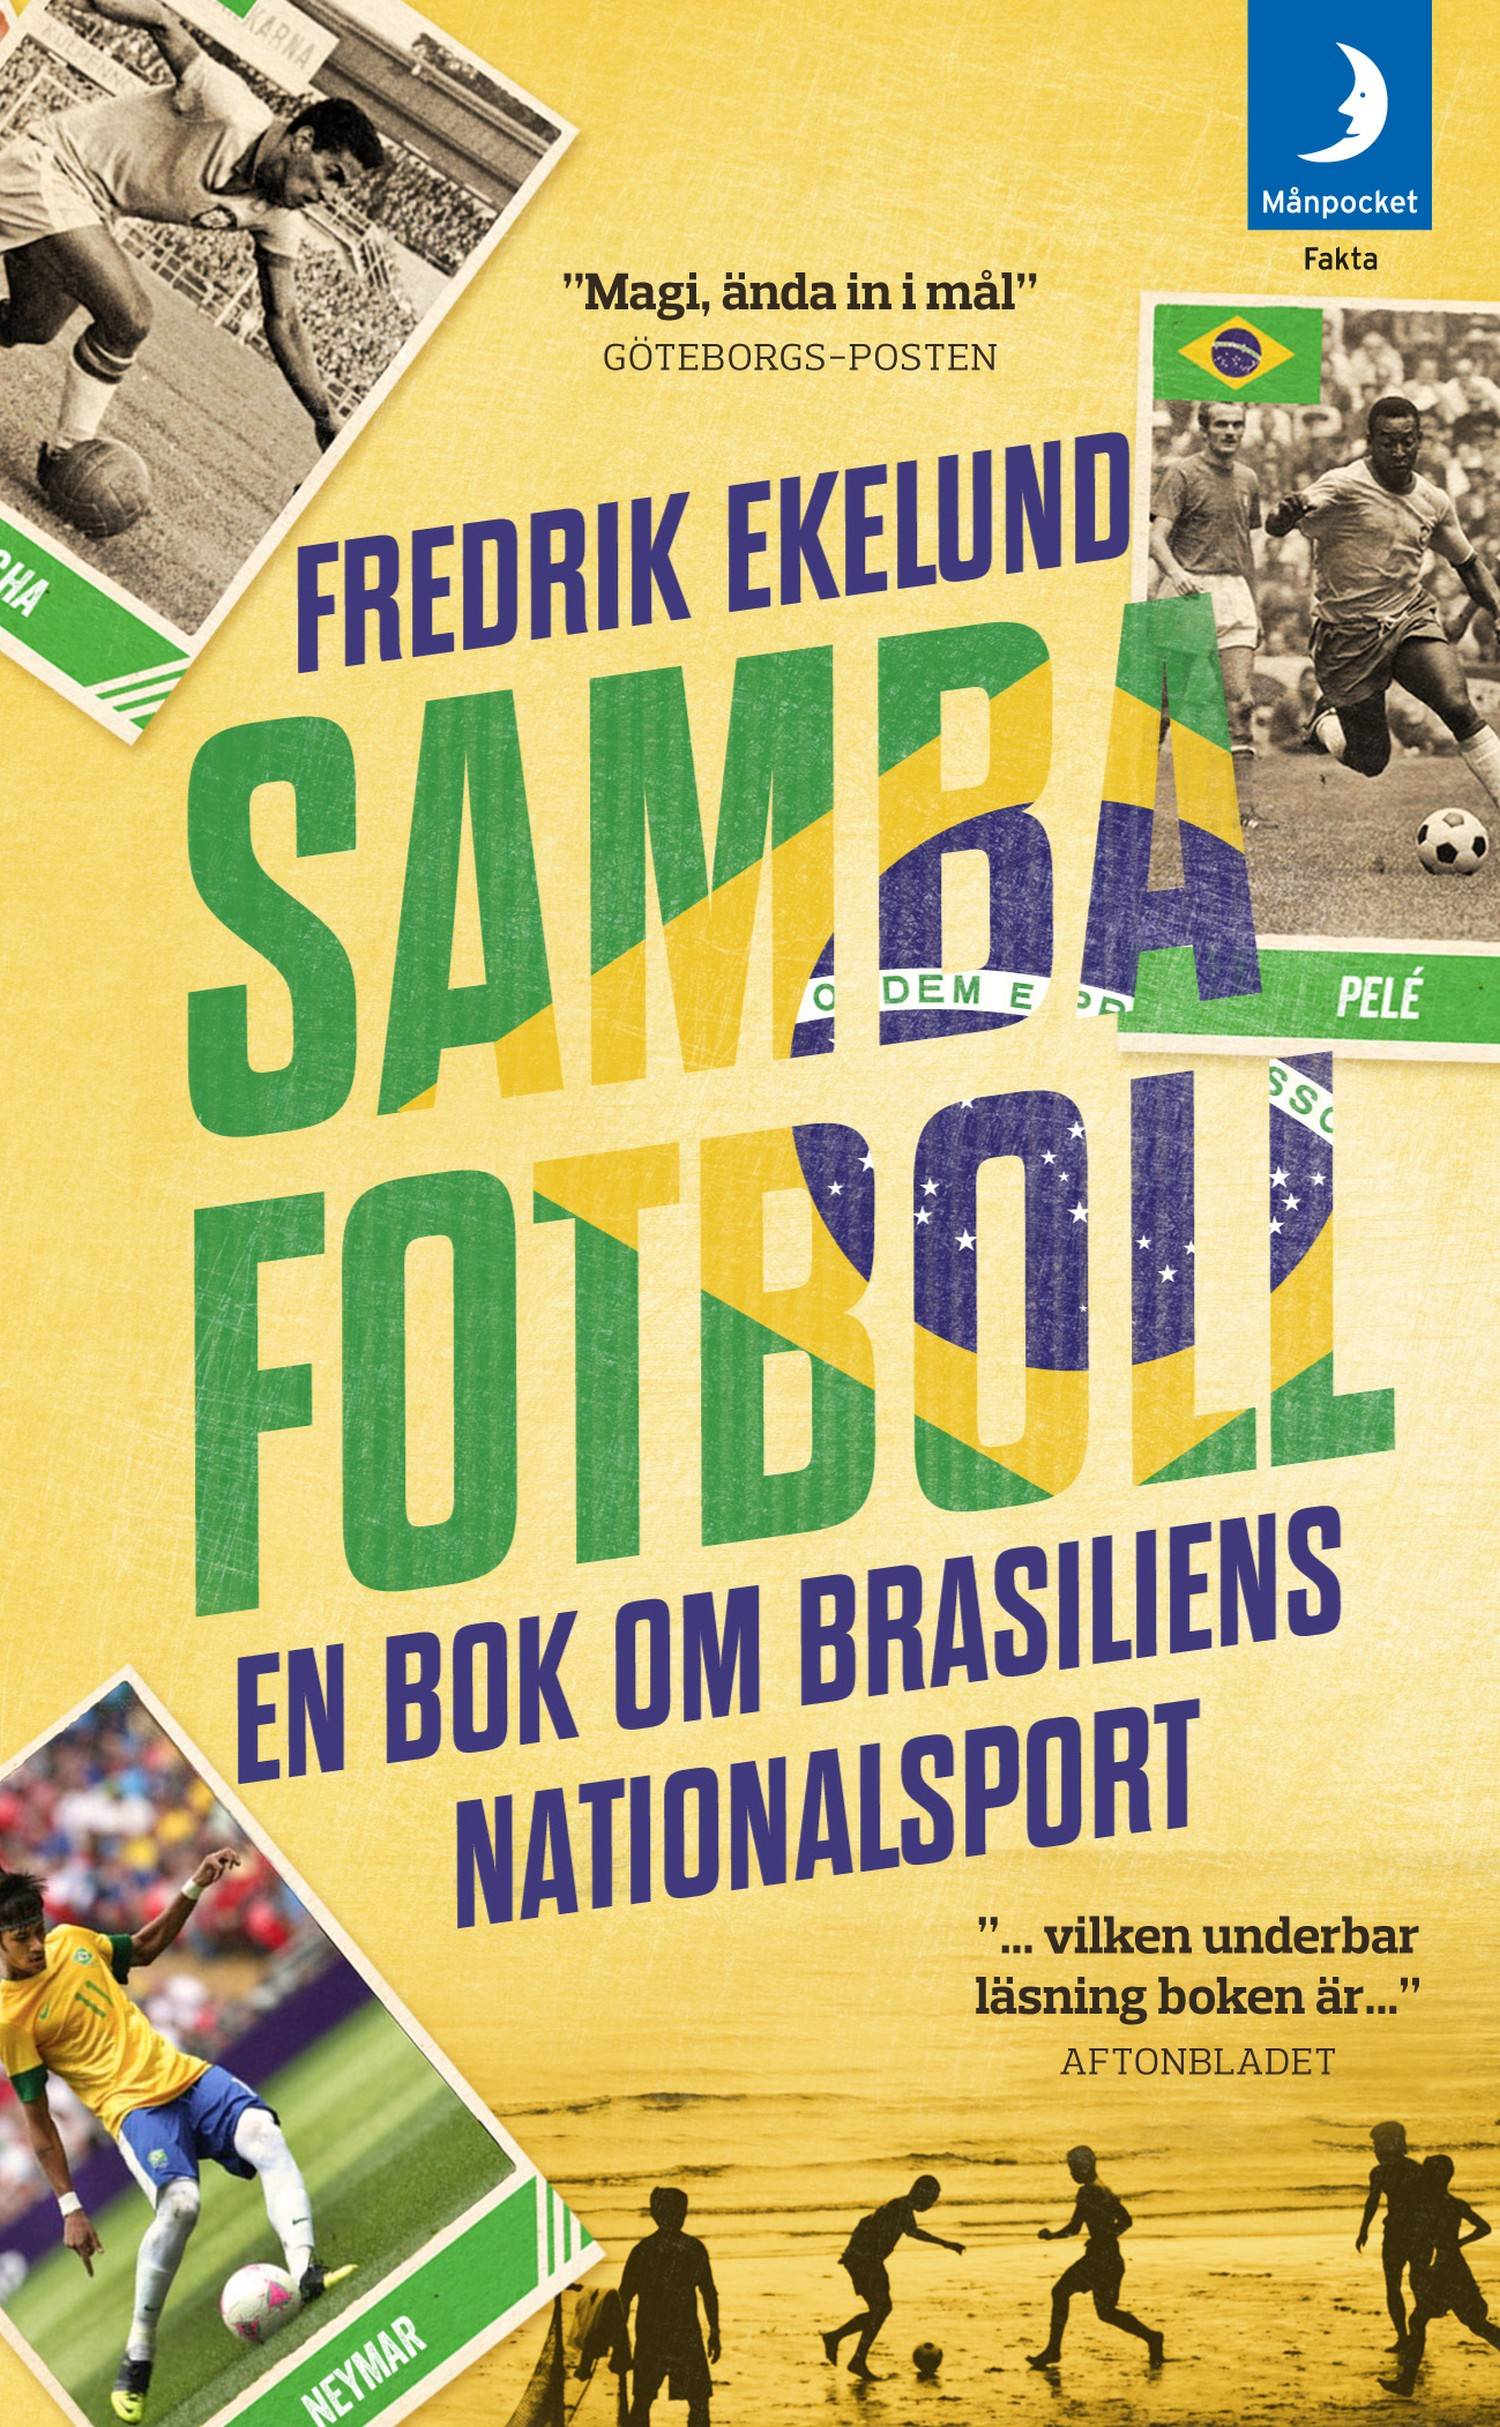 Sambafotboll : en bok om Brasiliens nationalsport